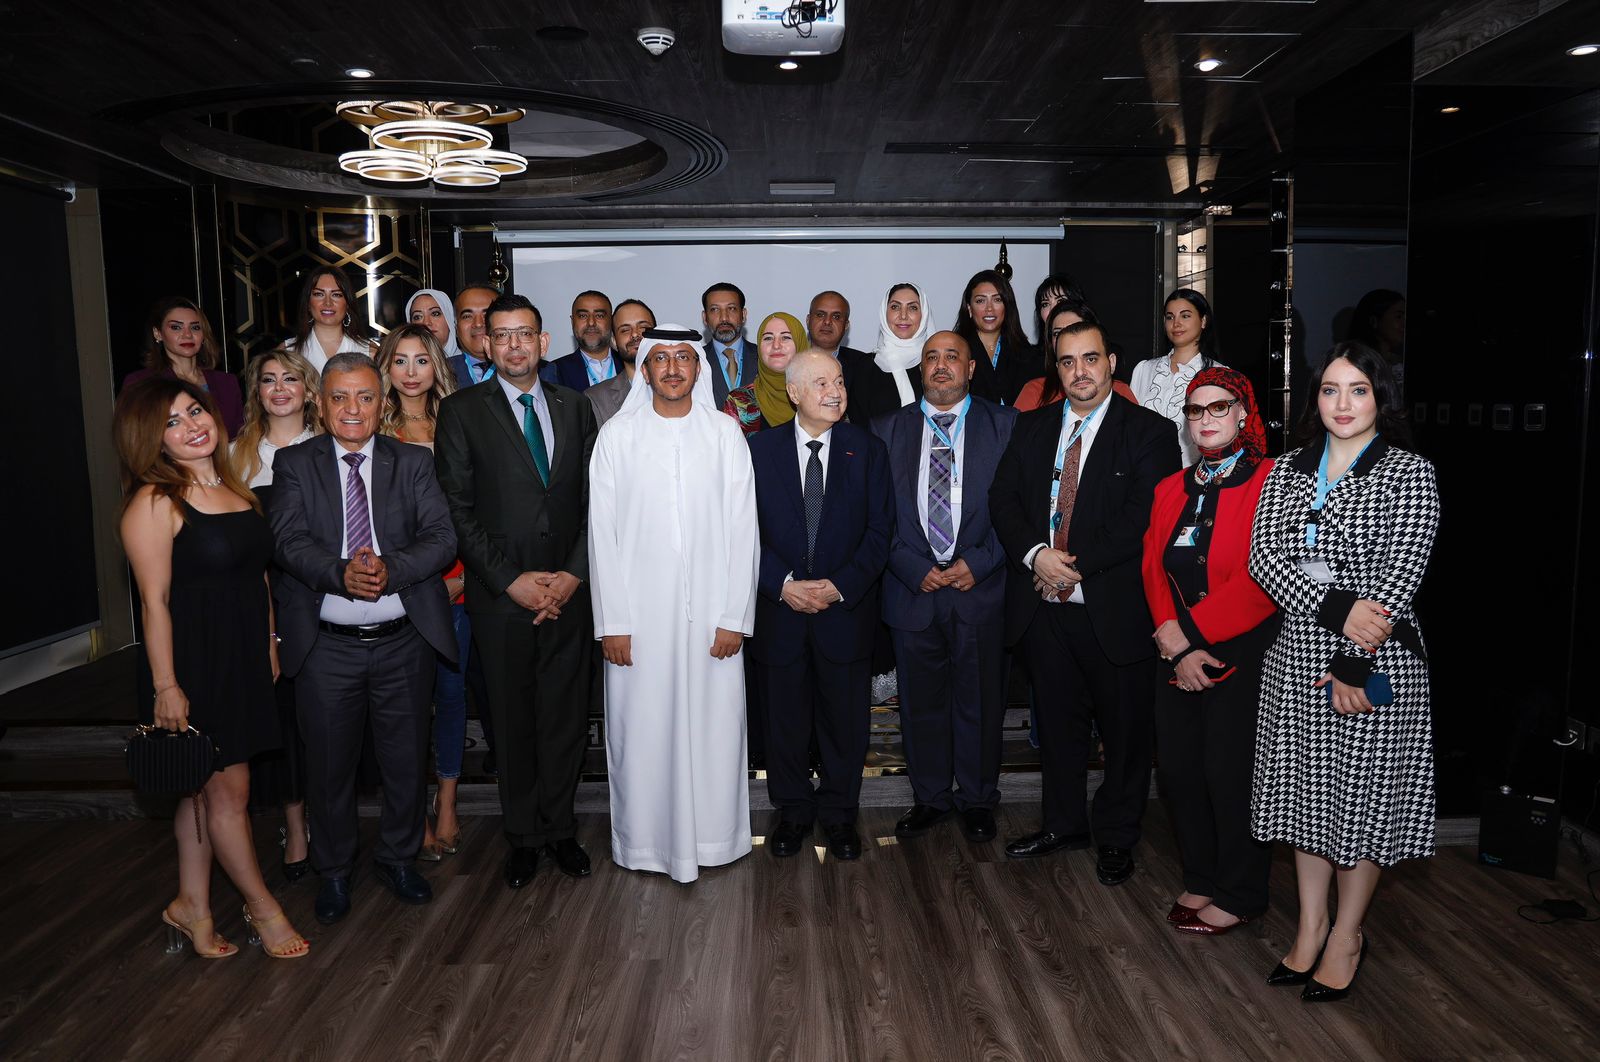 الشبكة العربية للإبداع والابتكار توقع اتفاقية تعاون مع مجموعة طلال ابو غزالة العالمية بهدف دعم حركة الإبداع والابتكار بالوطن العربى.